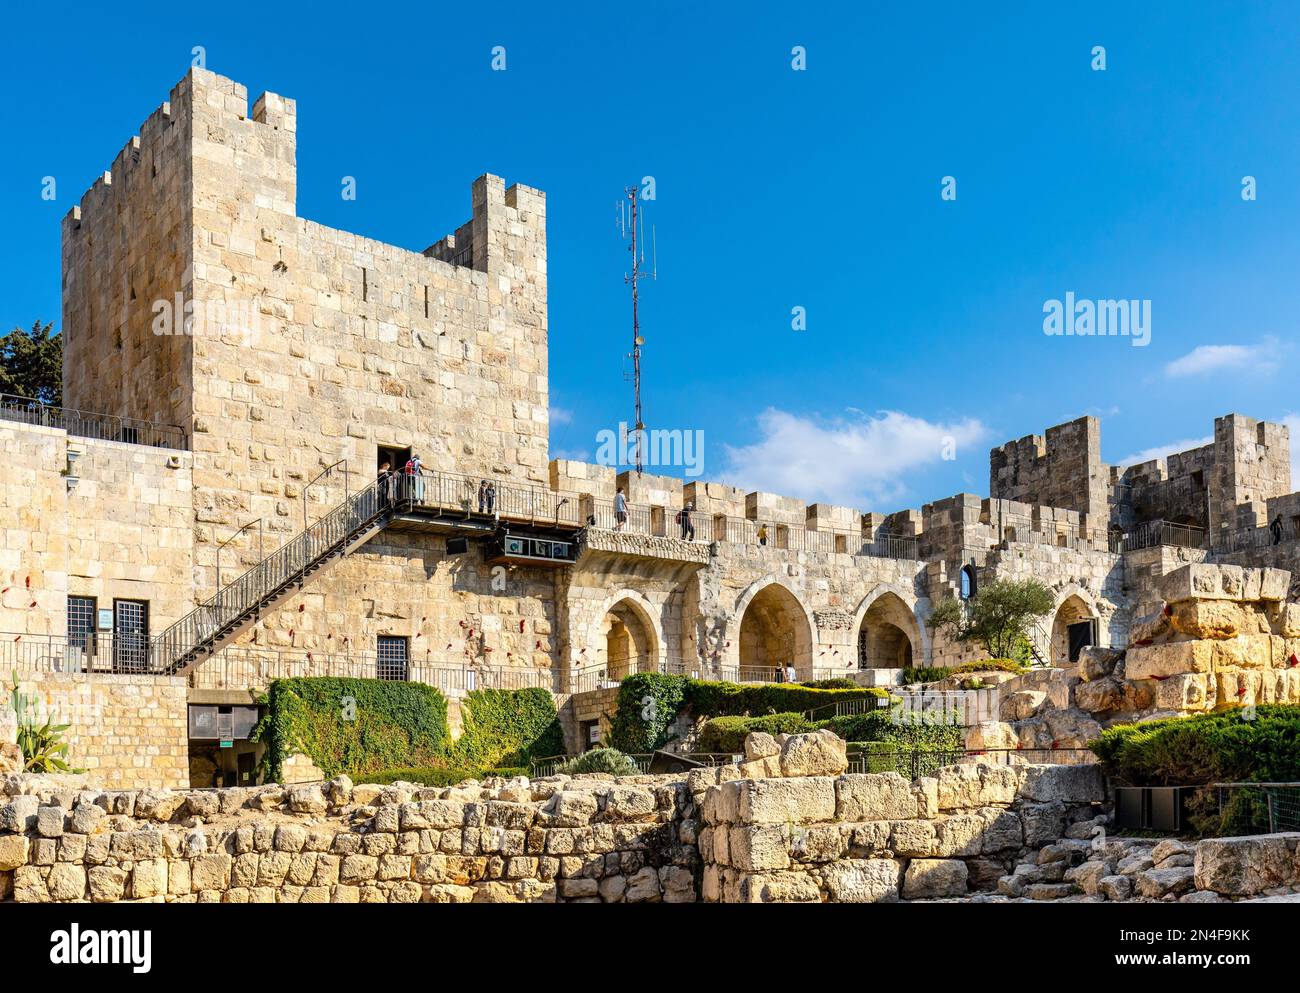 Jerusalem, Israel - 12. Oktober 2017: Innenhof, Mauern und archäologische Ausgrabungsstätte des Turms der Zitadelle von David in Jerusalem Alt C. Stockfoto